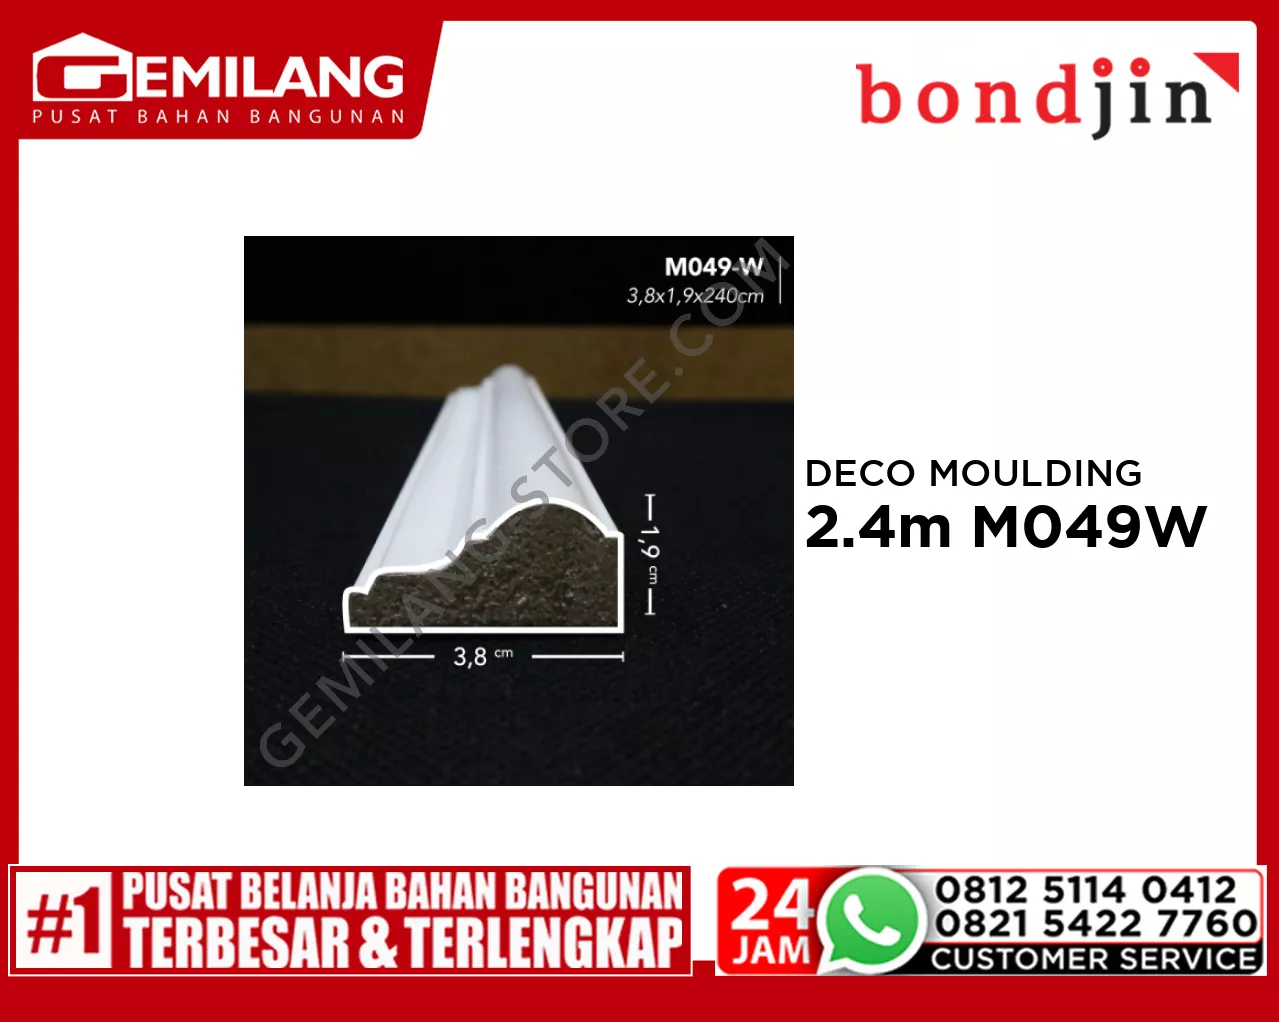 BONDJIN DECO MOULDING 2.4M M049-W